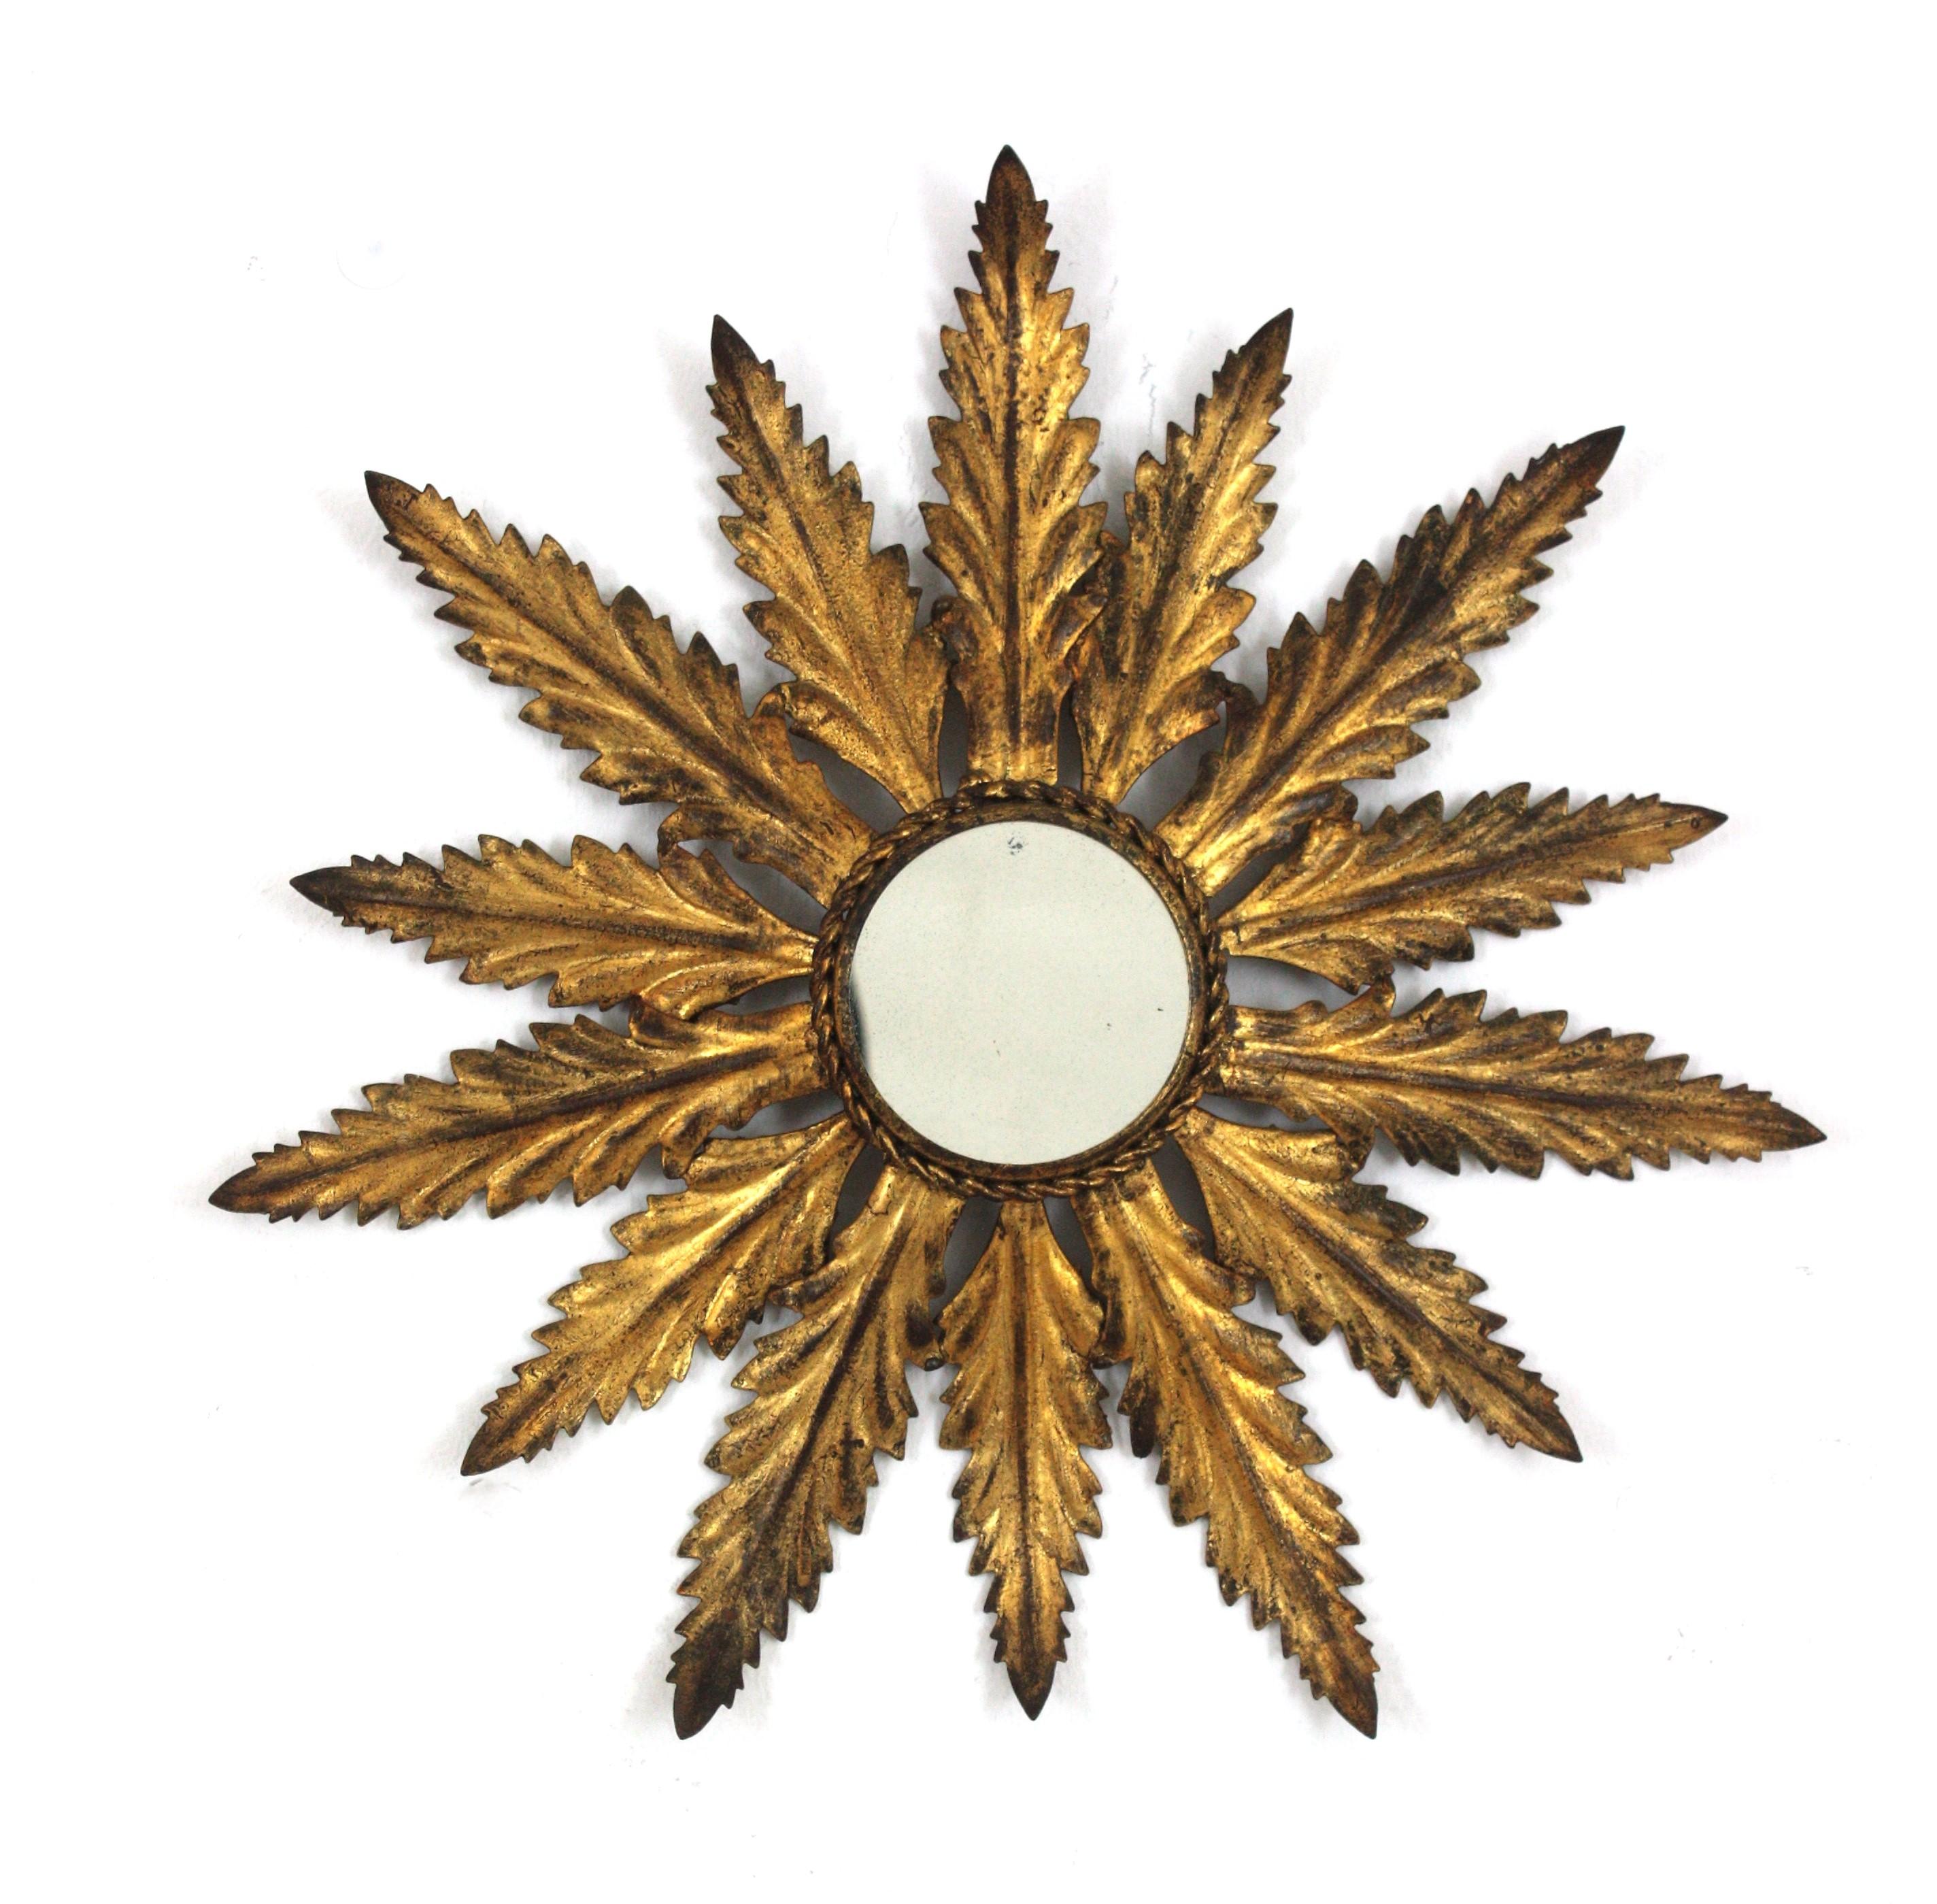 Miroir ensoleillé de petite taille avec cadre de feuillage, fer doré, feuille d'or
Miroir en forme de soleil à feuilles en fer doré martelé à la main, de petite taille, Espagne, années 1940-1950.
Le cadre en fer doré est fini à la feuille d'or et